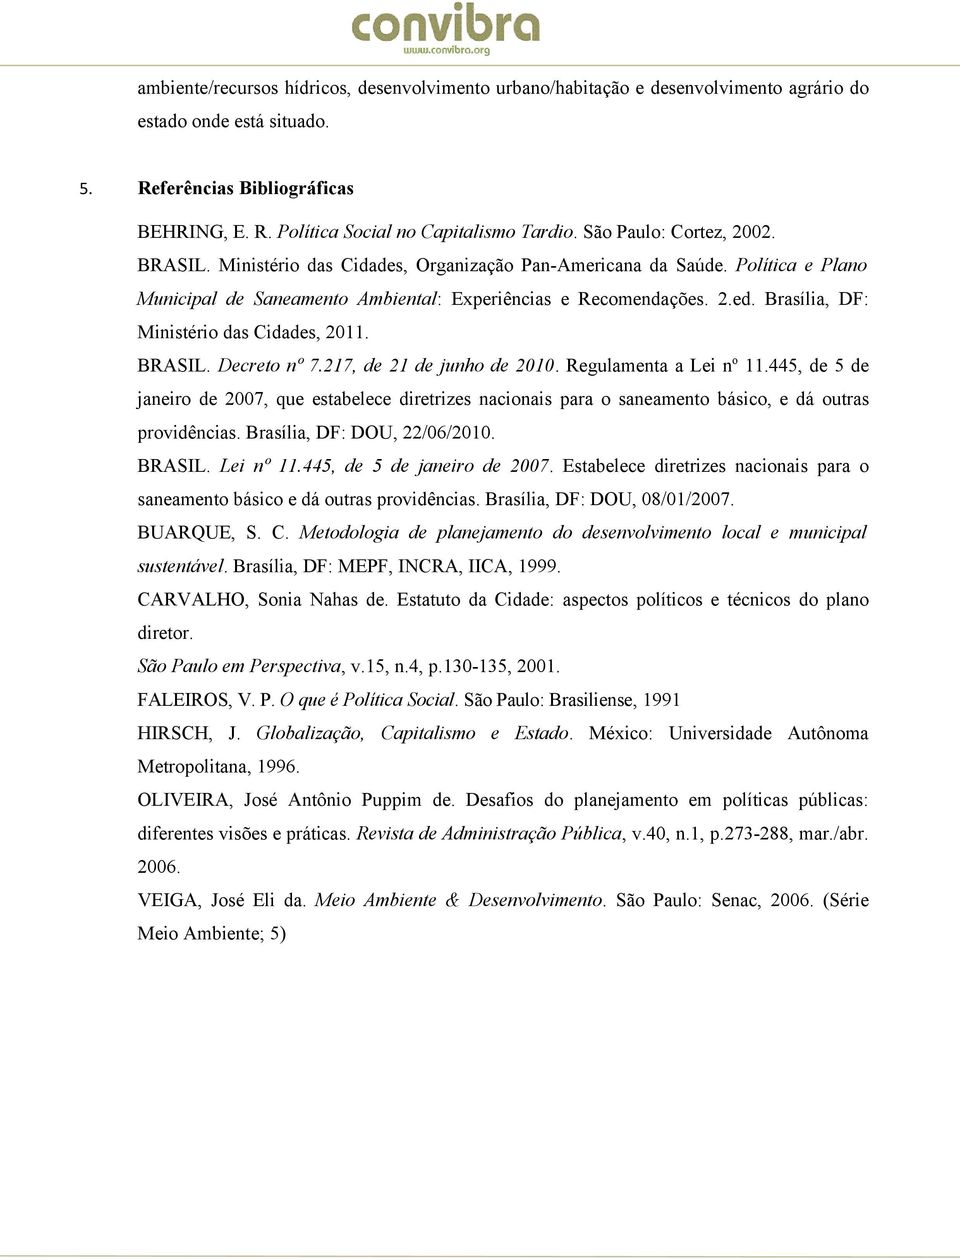 Brasília, DF: Ministério das Cidades, 2011. BRASIL. Decreto nº 7.217, de 21 de junho de 2010. Regulamenta a Lei n o 11.